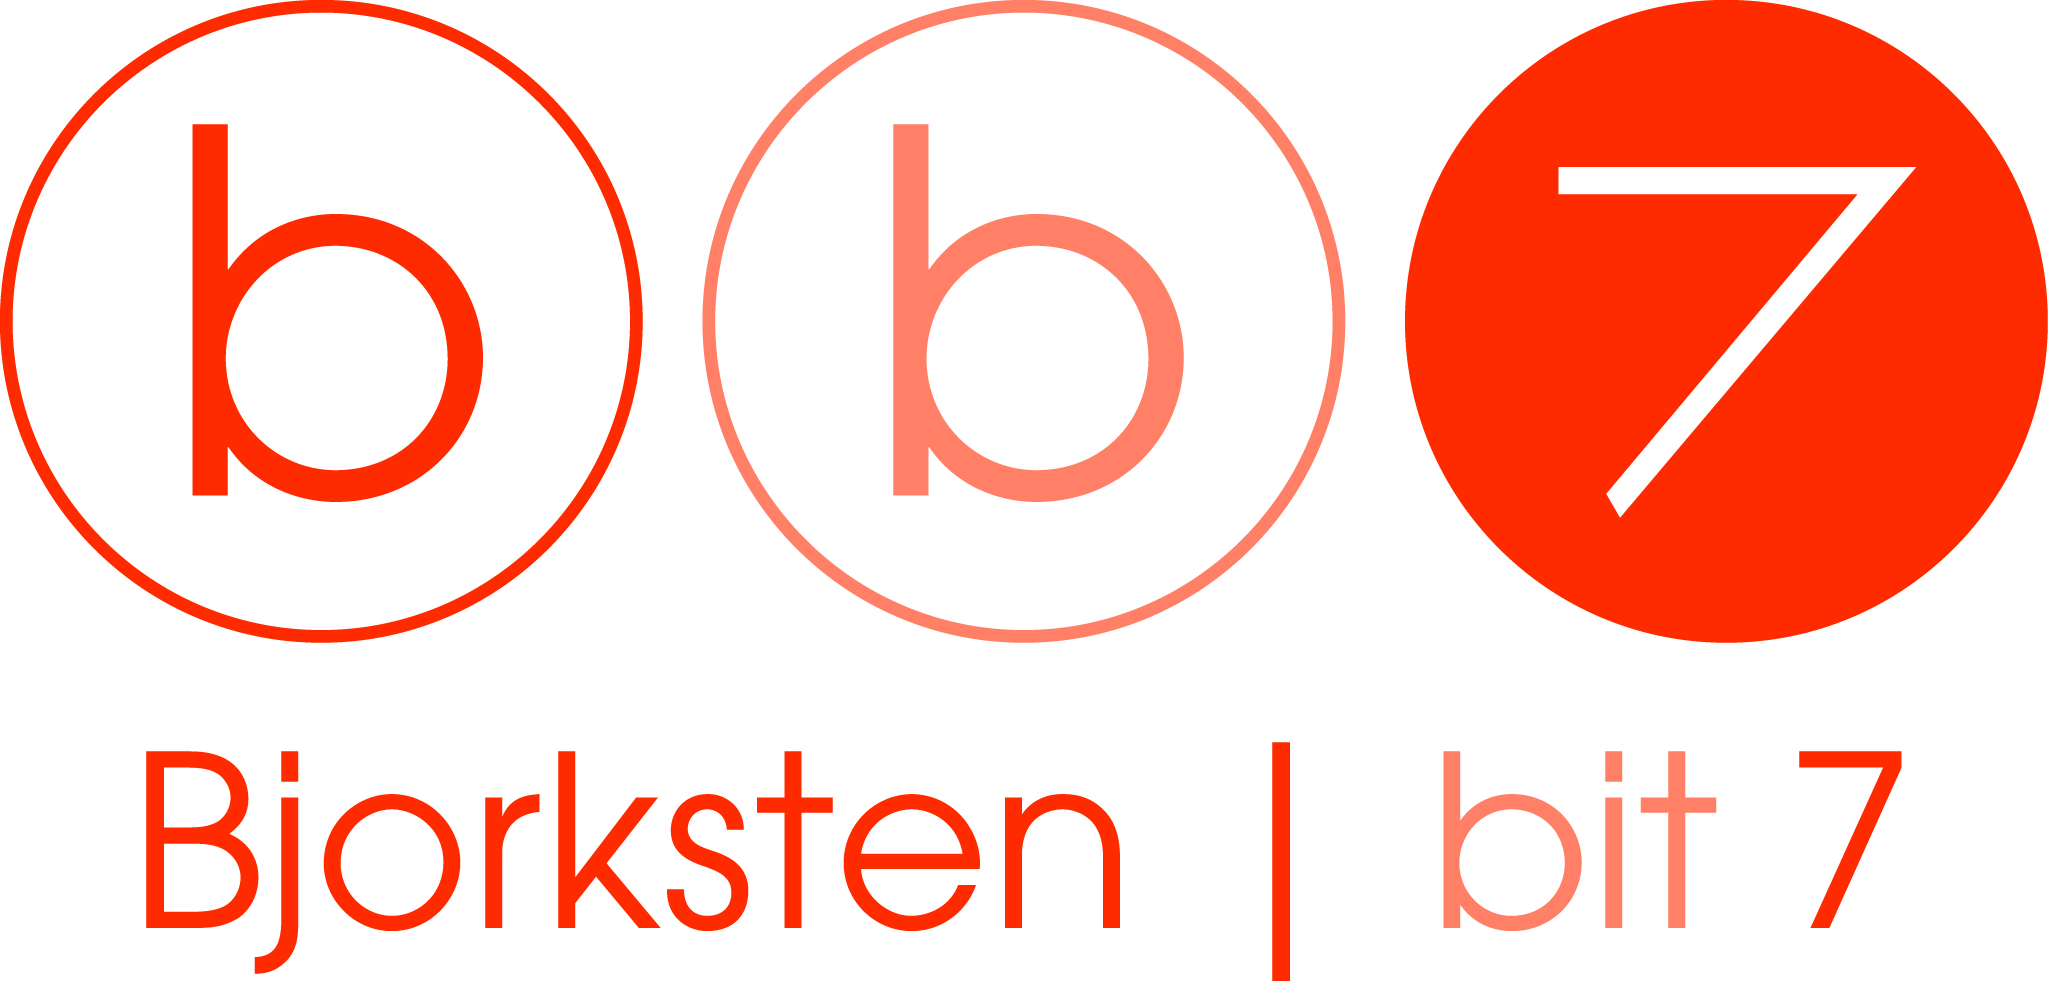 Bjorksten | bit 7 Logo